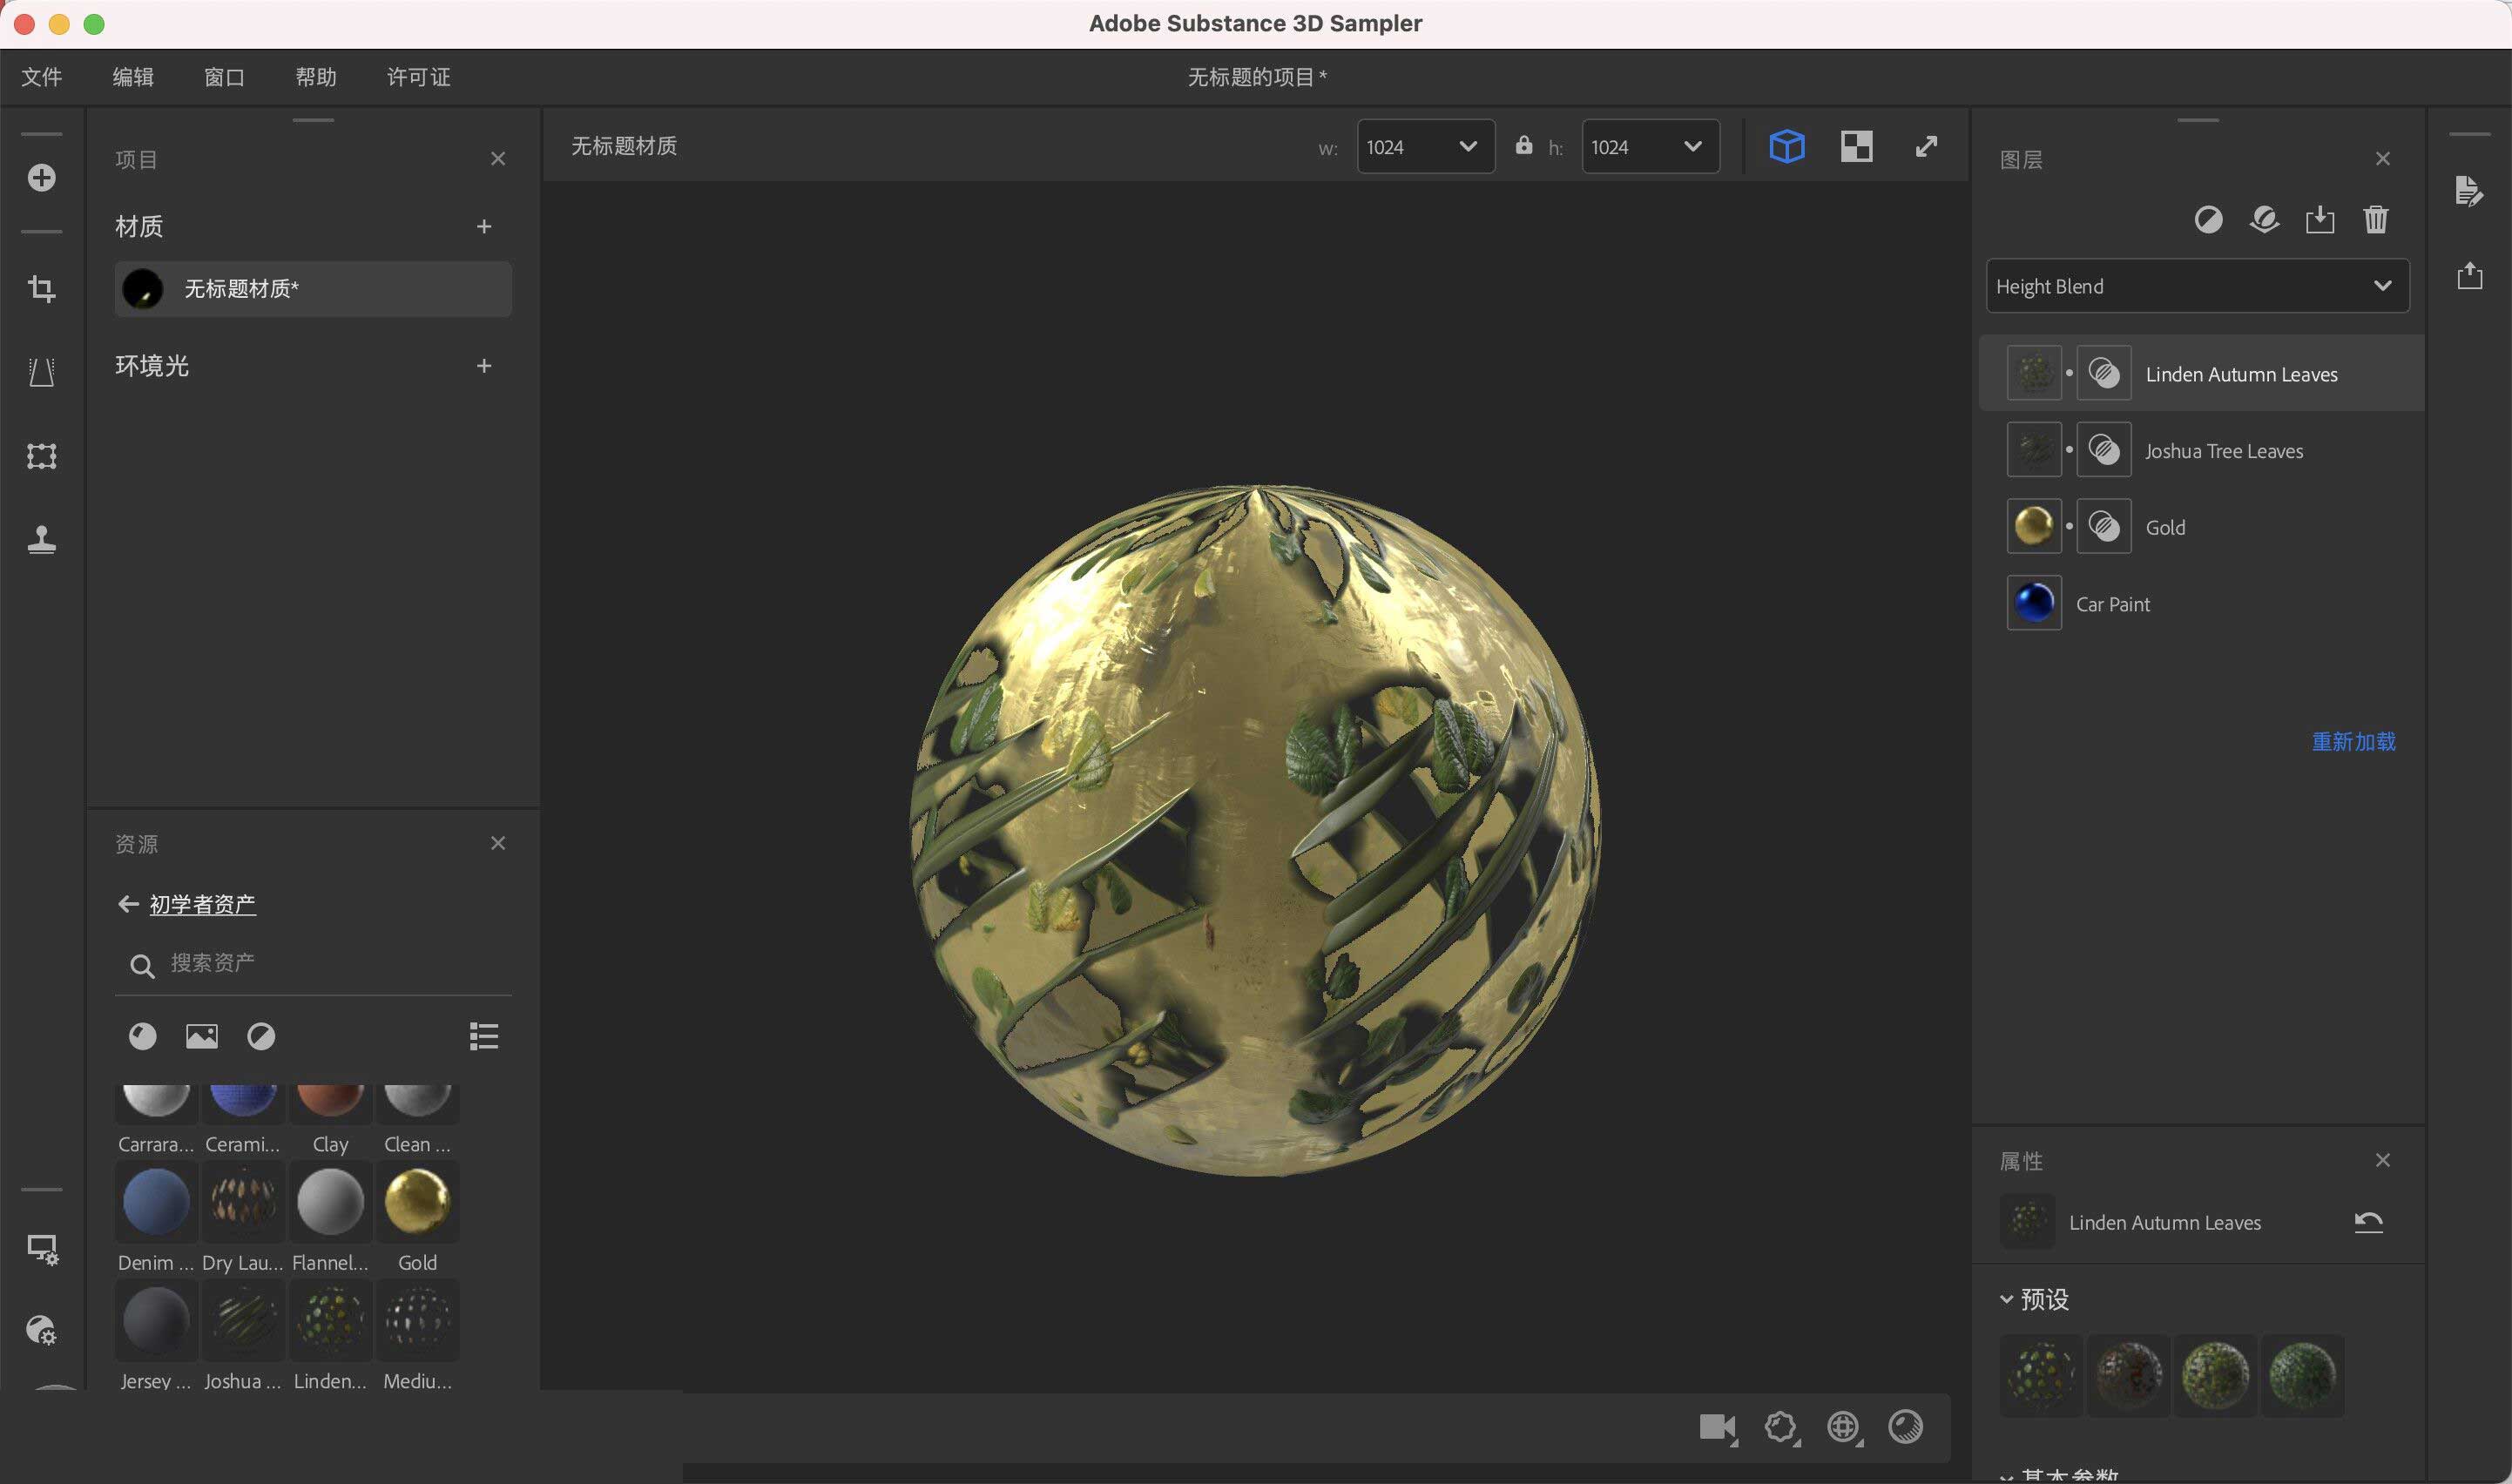 Adobe Substance 3D Sampler 4.1.2.3298 for windows download